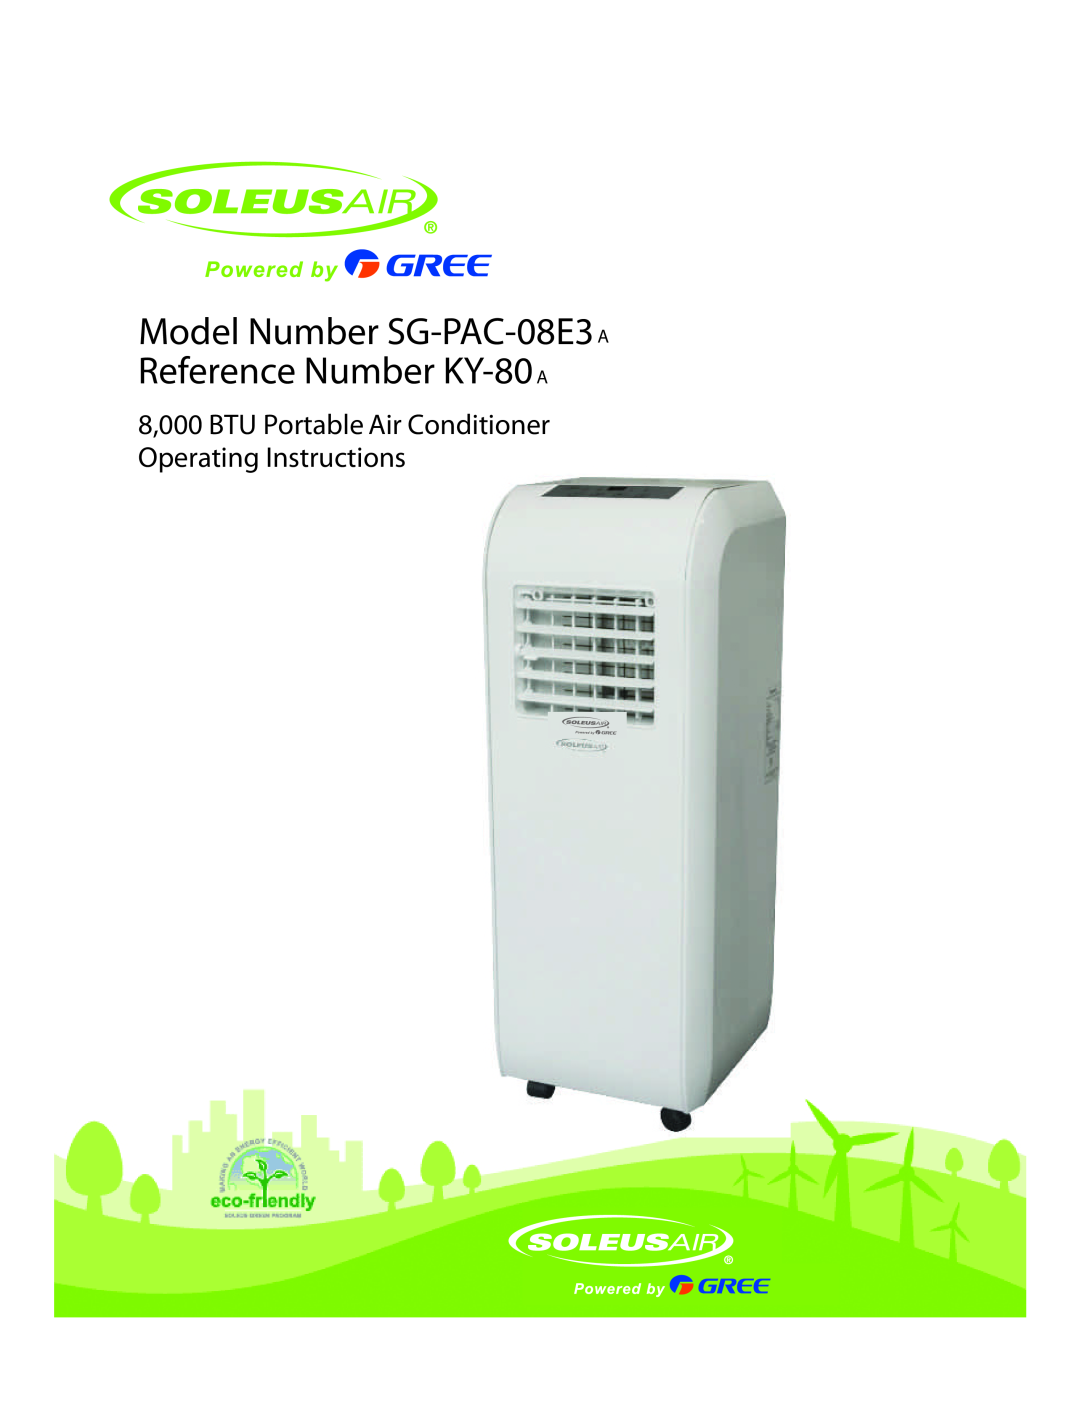 Soleus Air manual Model No. SG-PAC-08E3, 8,000 BTU Portable Air Conditioner, Operating Instructions 